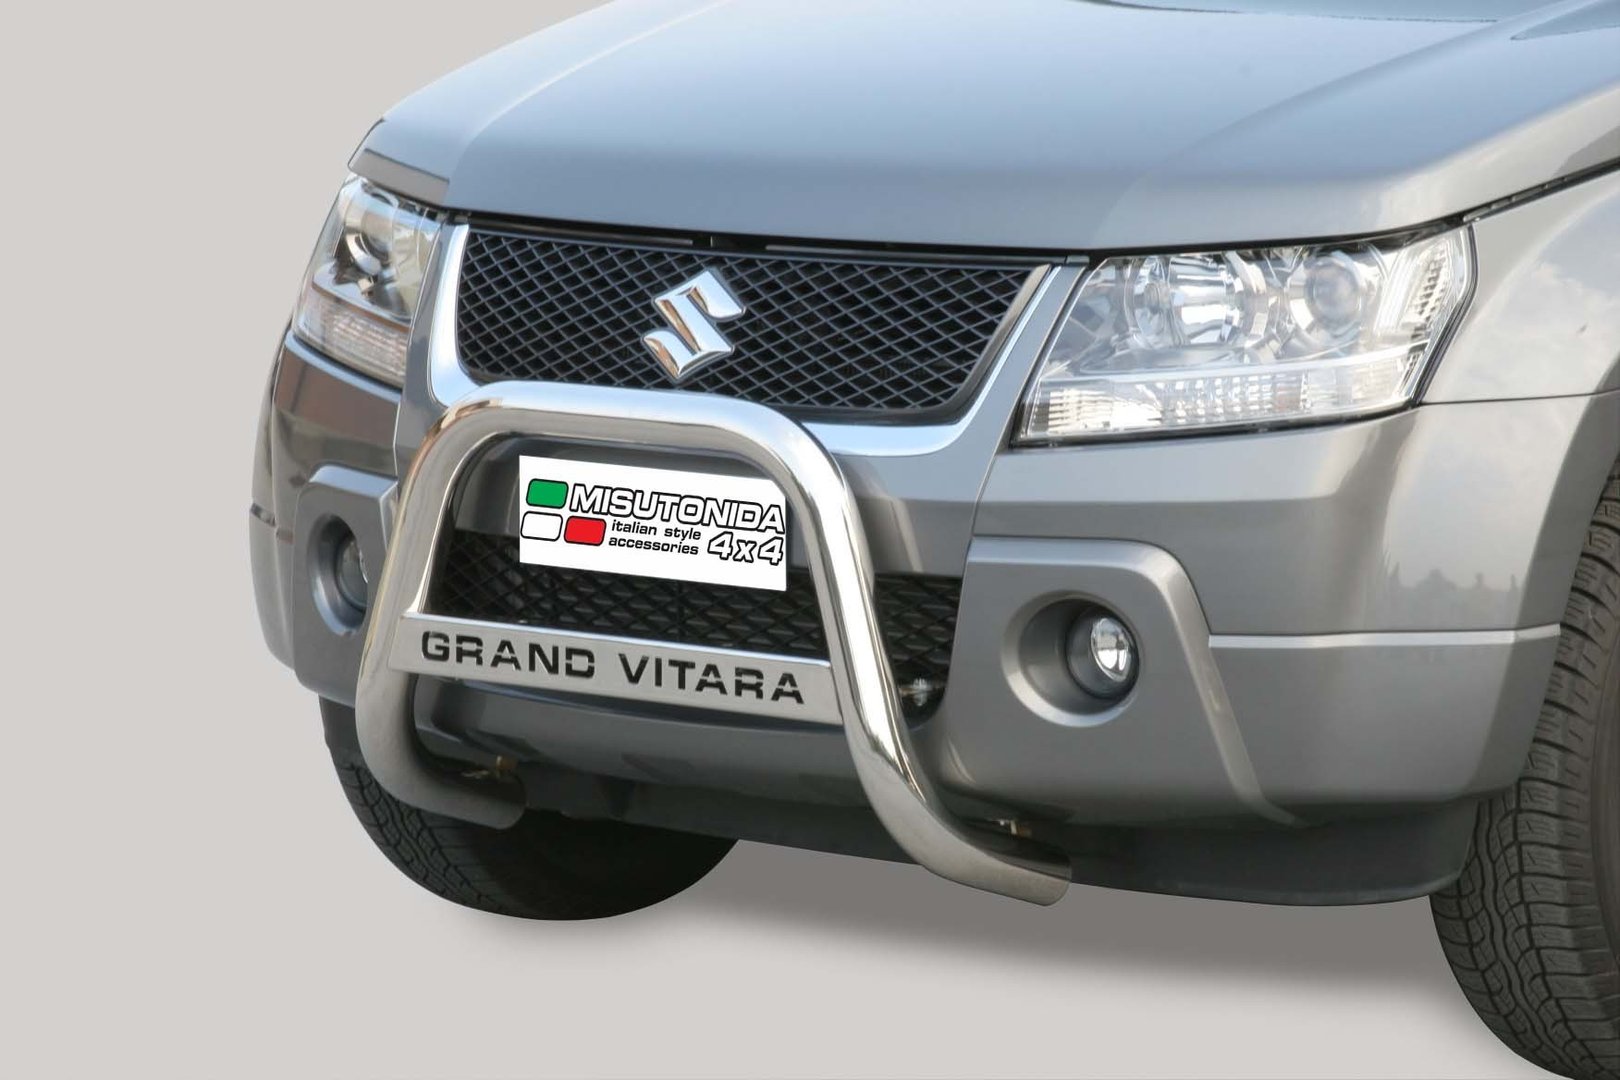 Suzuki Grand Vitara EU - Valorauta 2005-2008 (Misutonida)